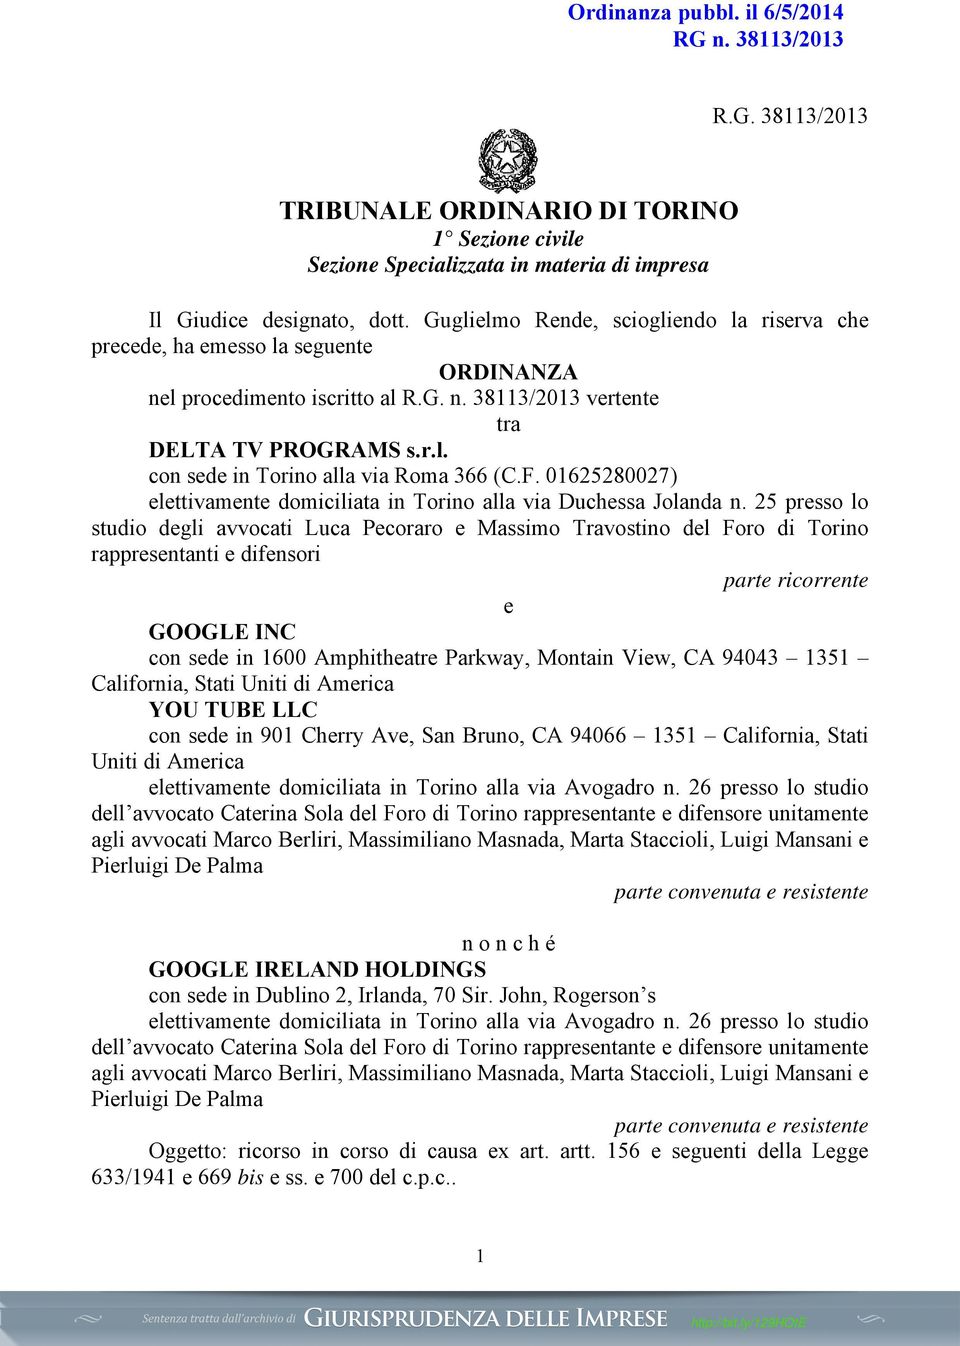 F. 01625280027) elettivamente domiciliata in Torino alla via Duchessa Jolanda n.